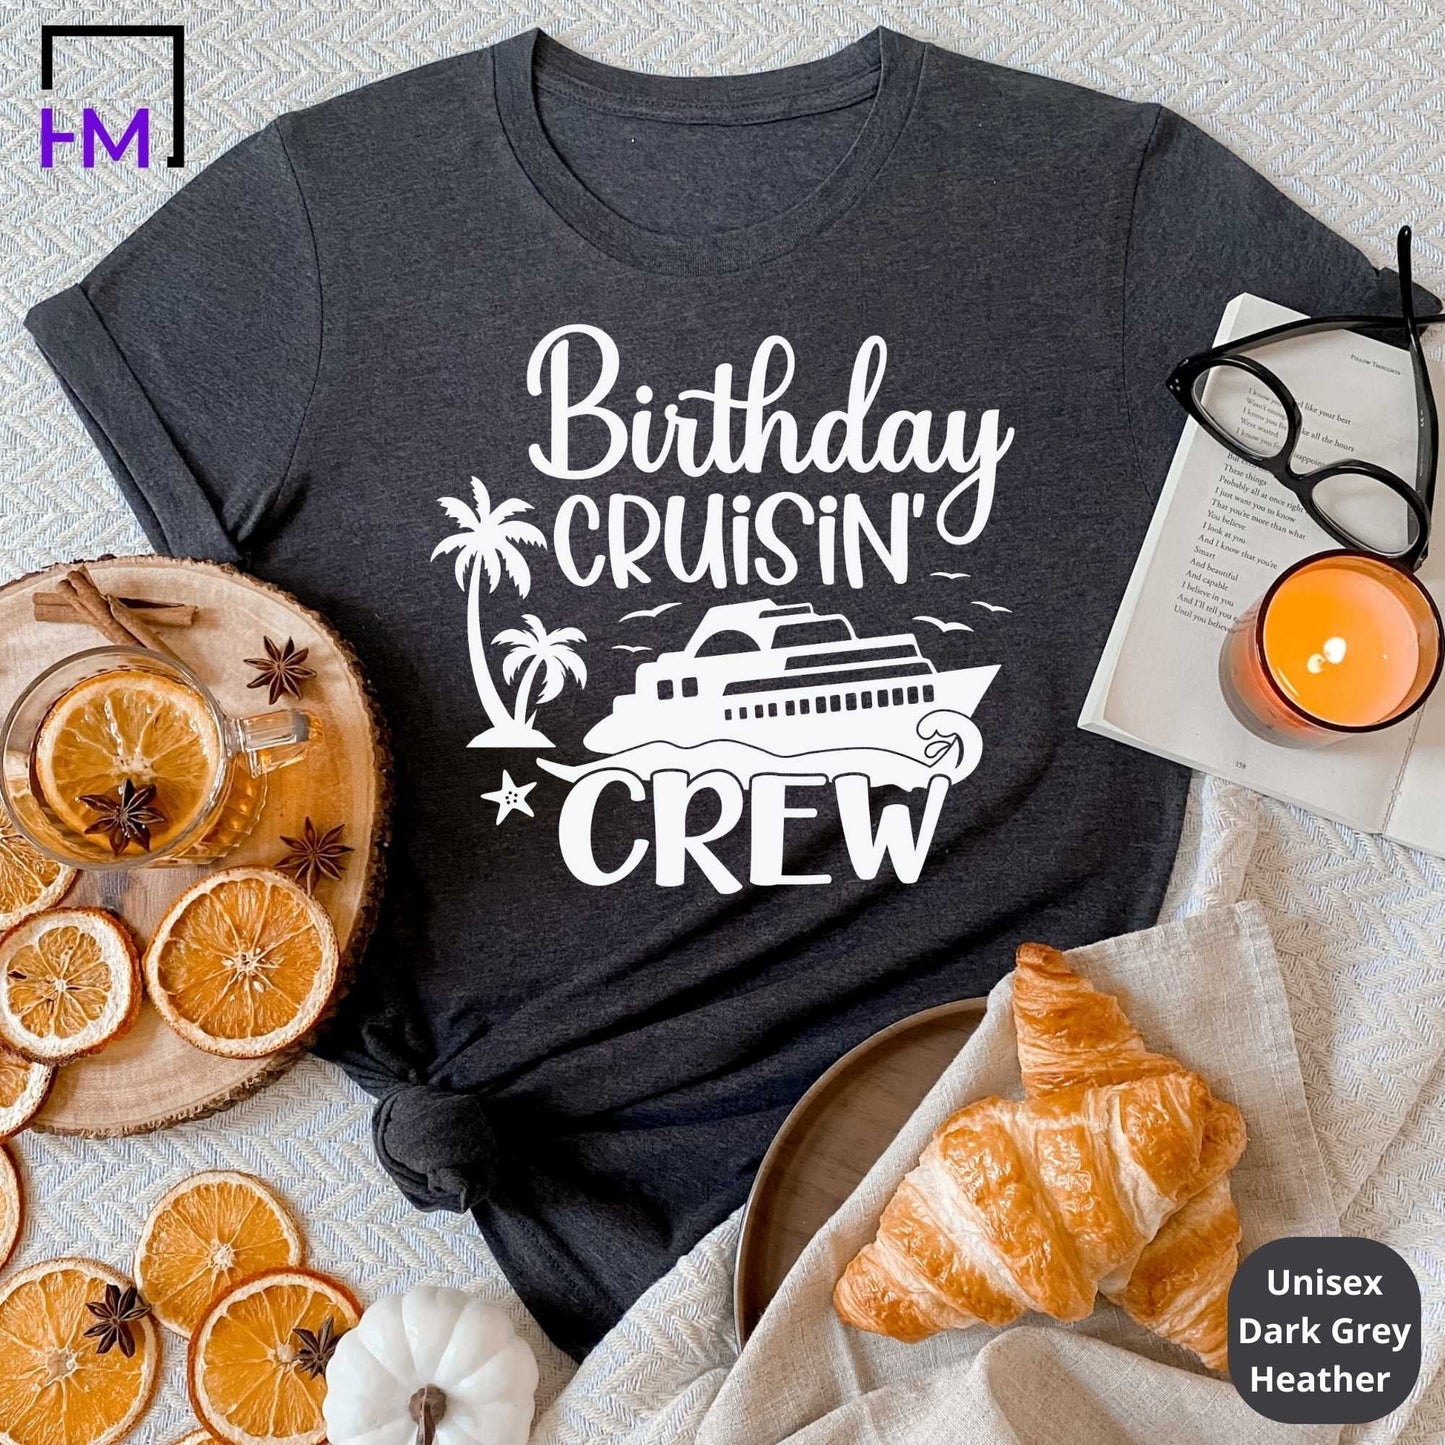 Birthday Cruisin Crew, Birthday Cruise Shirts